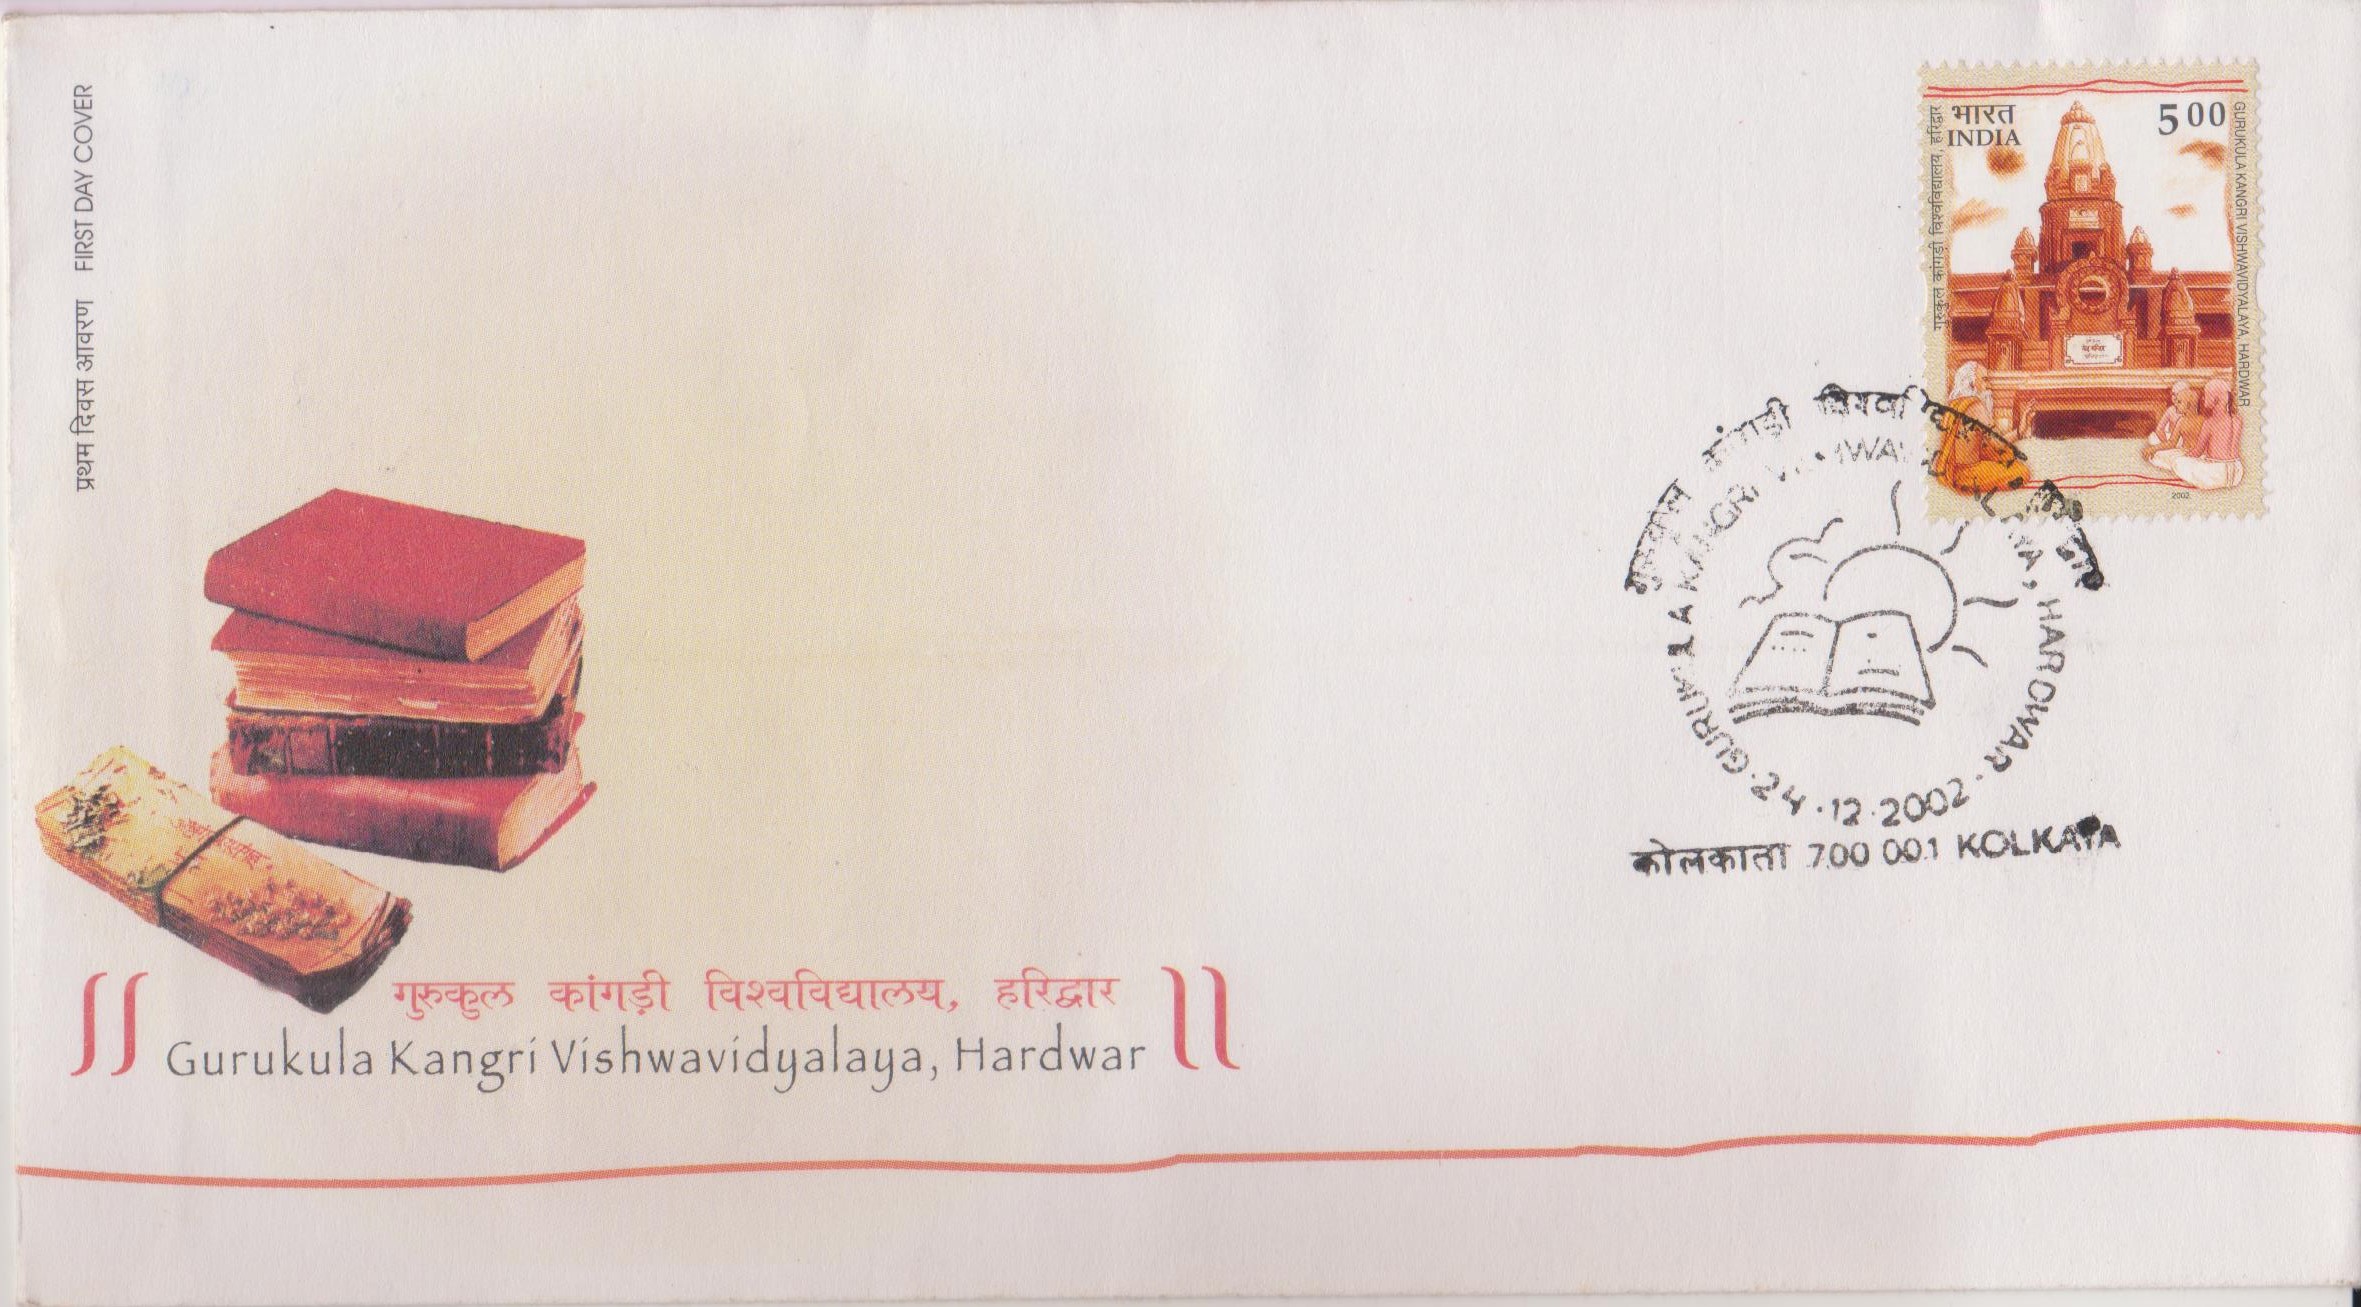 Gurukul Kangri Vishwavidyalaya : Swami Shraddhananda